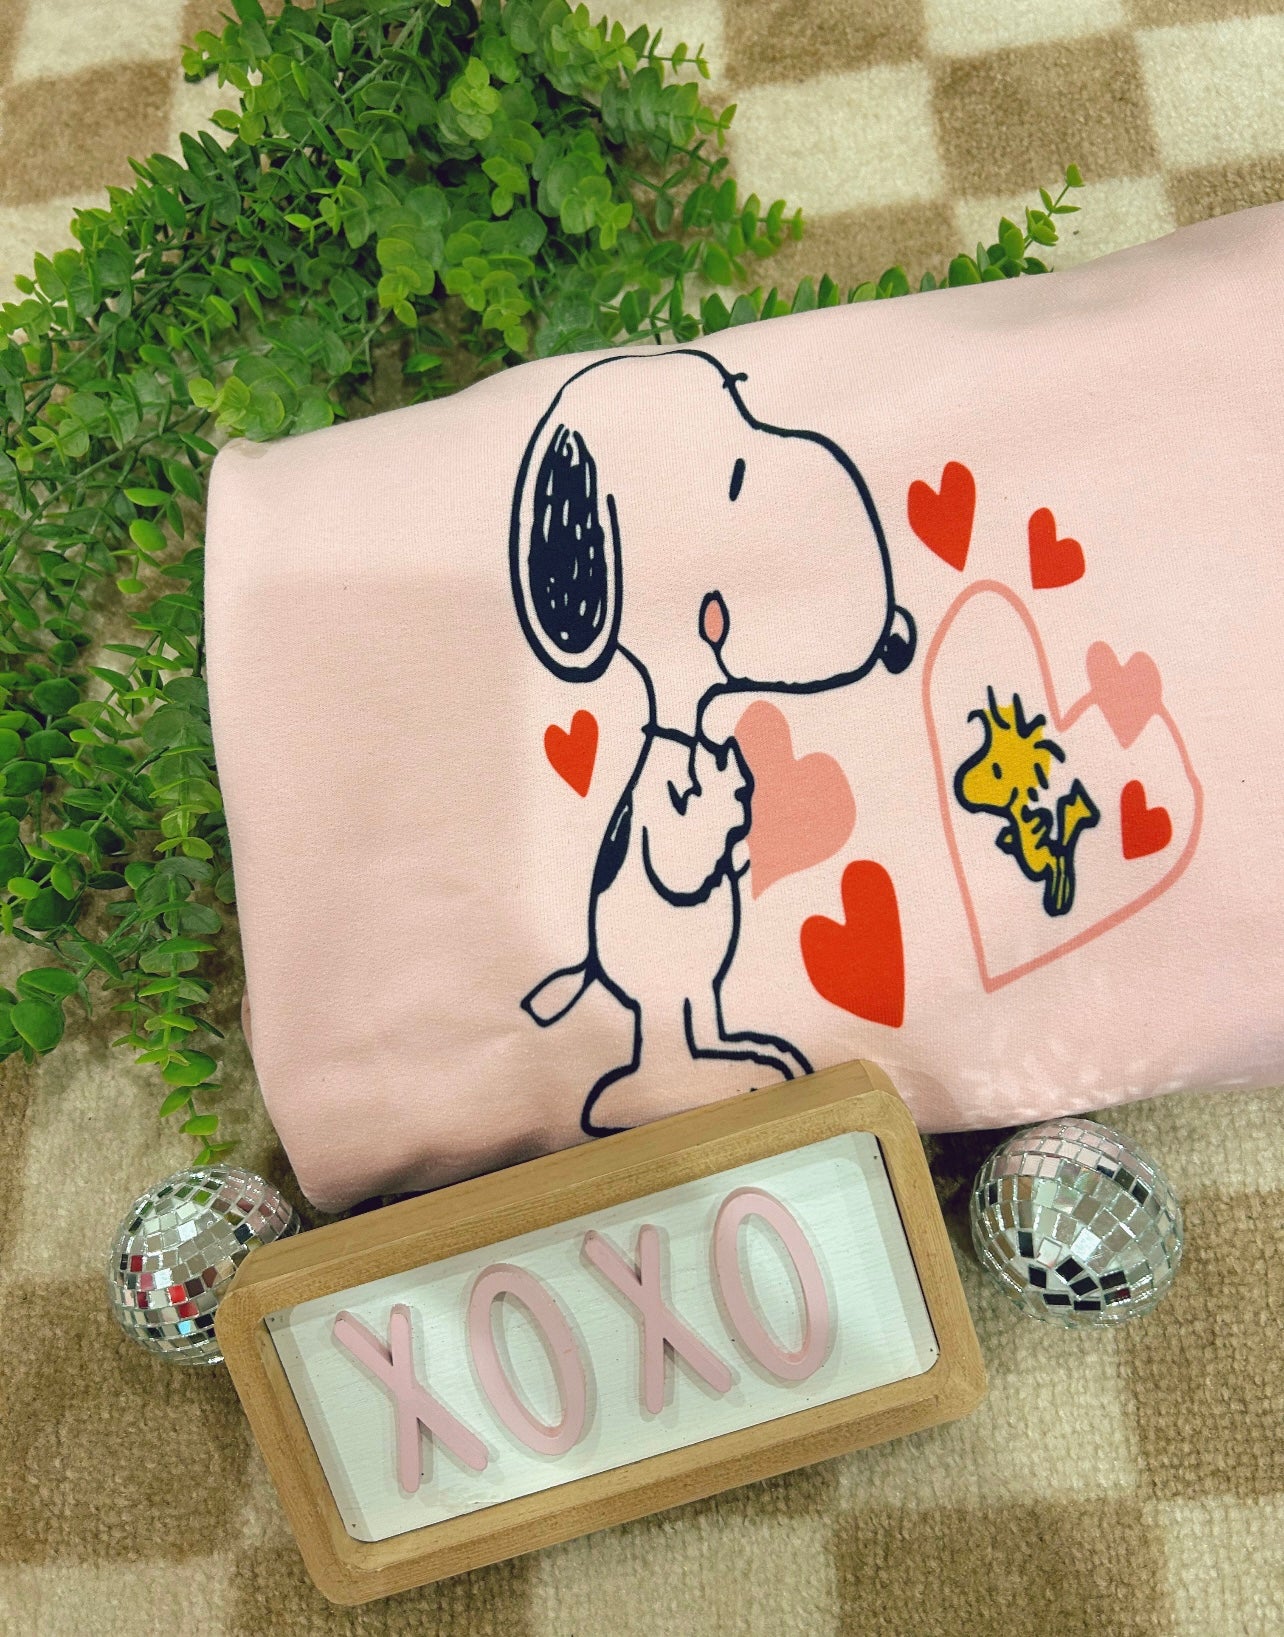 Snoopy Valentine’s day crew